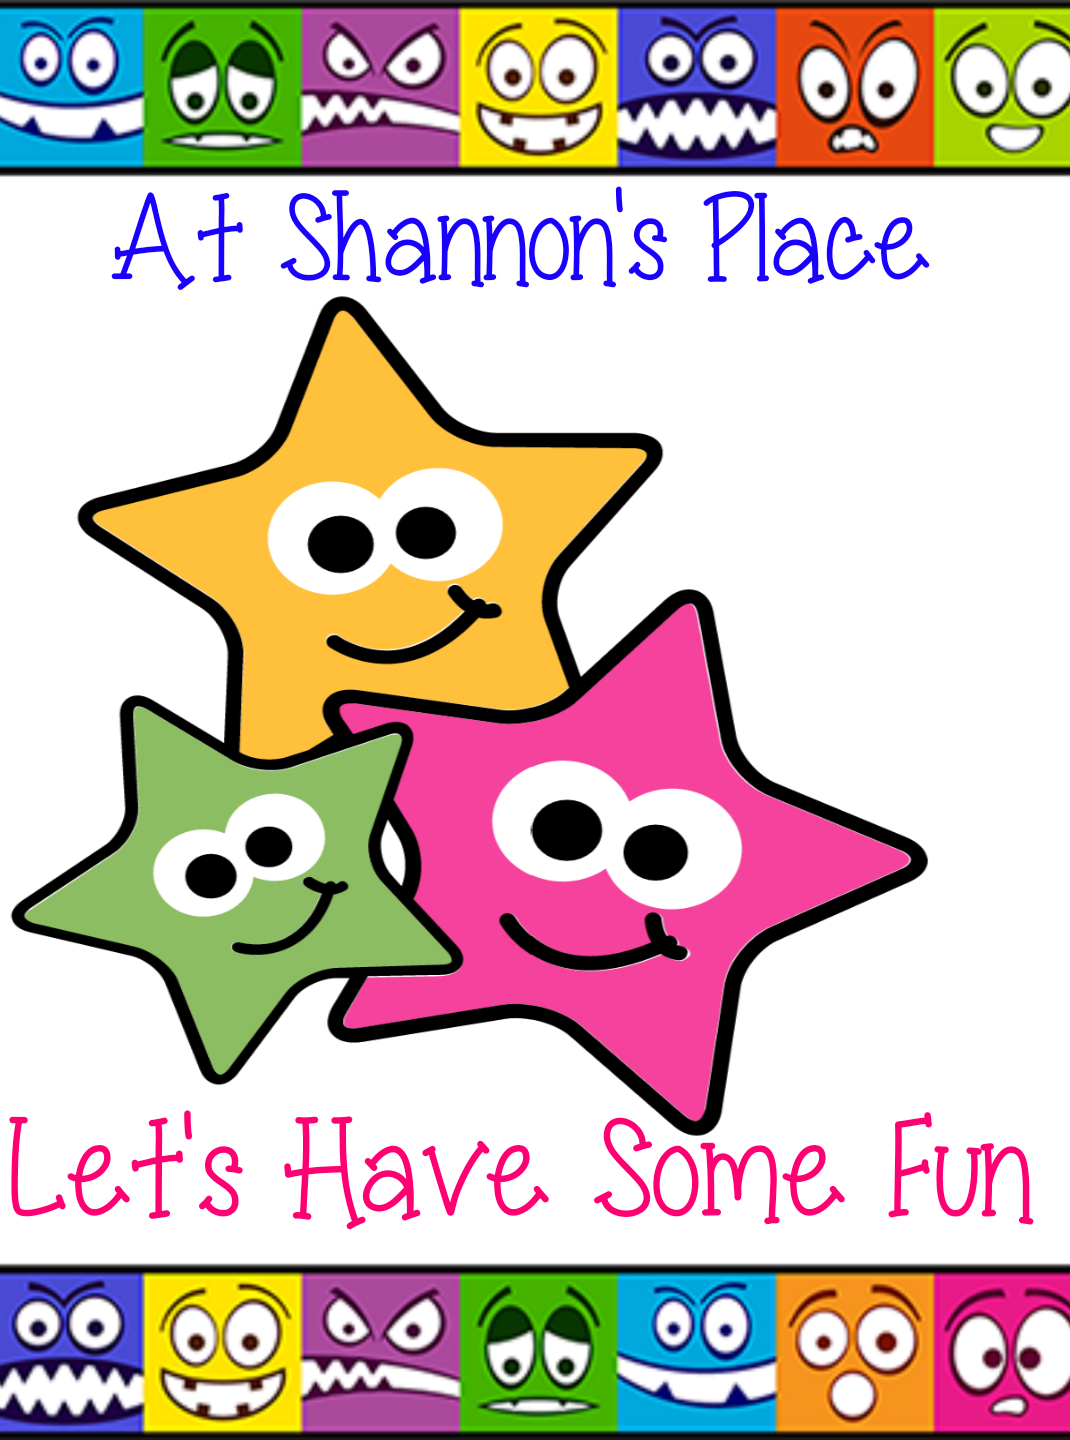 Shannon's Place